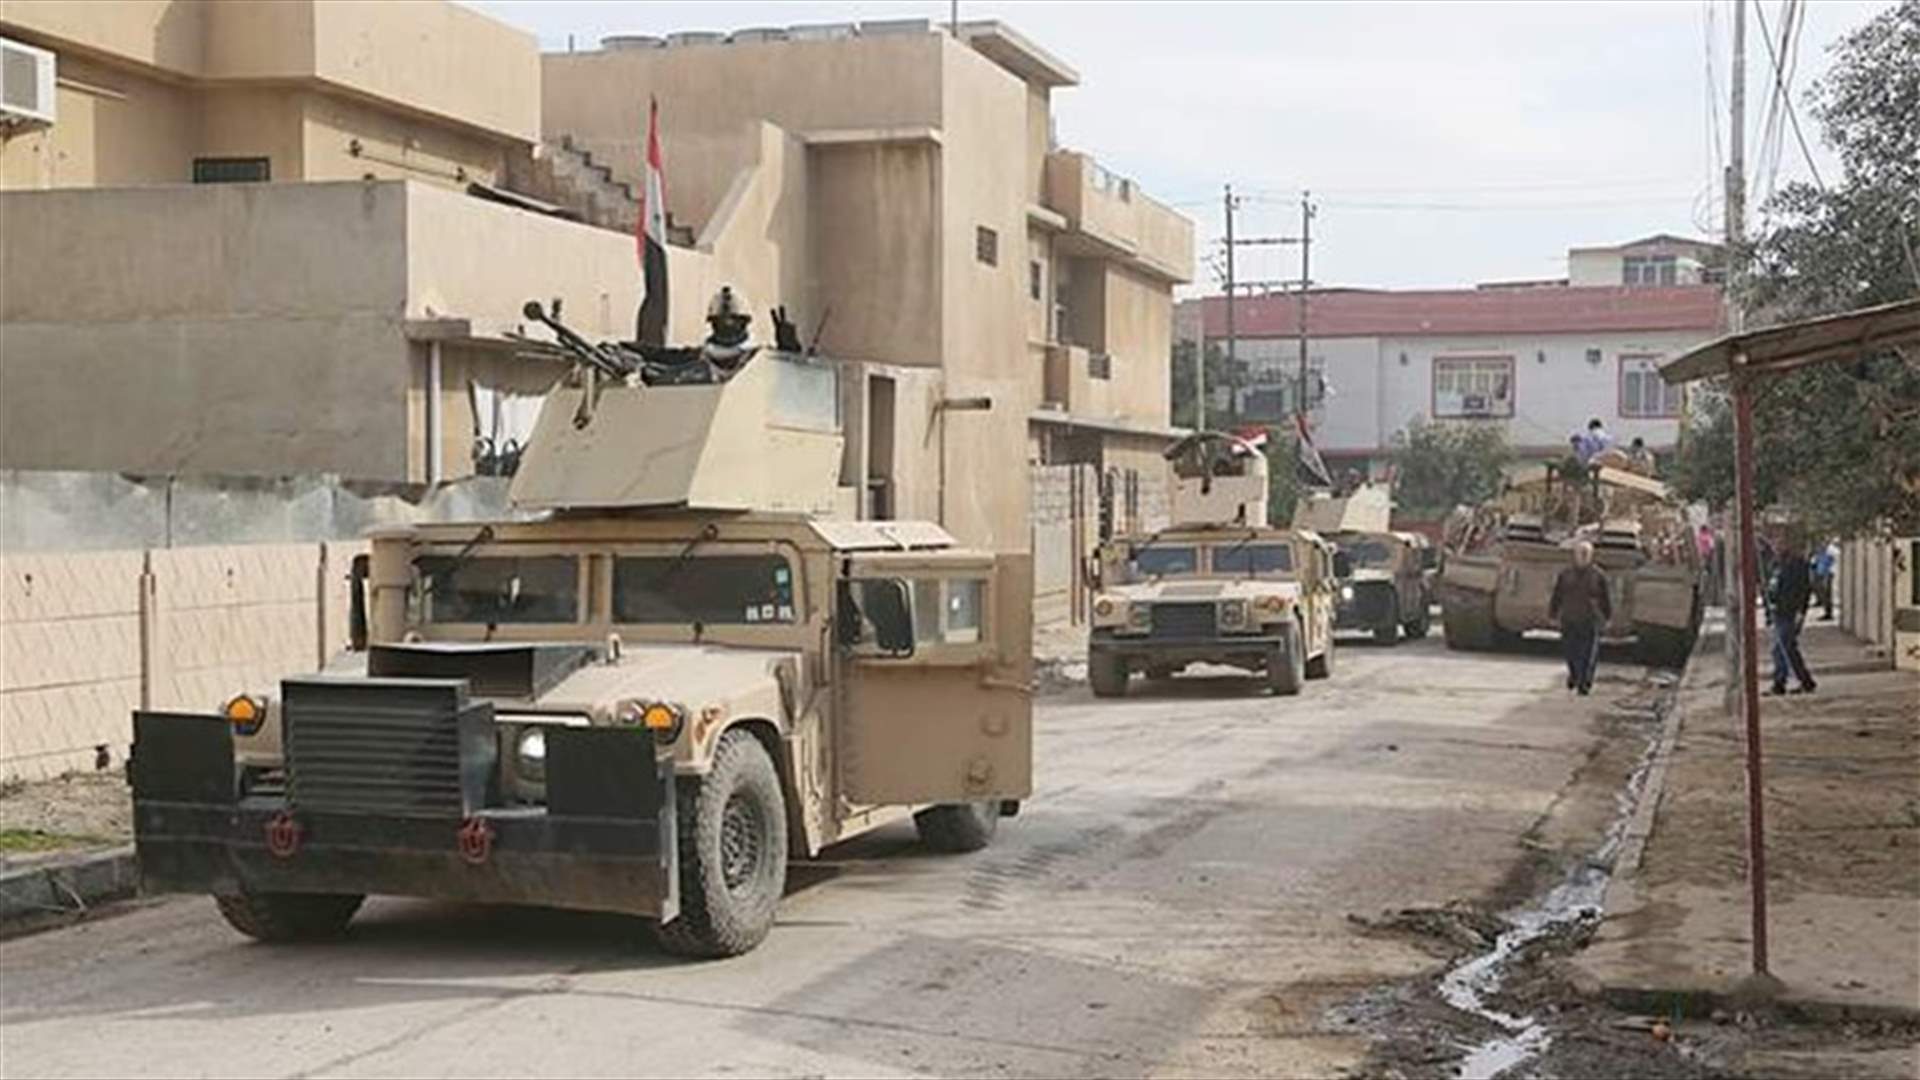  القوات العراقية تعلن تحرير القسم الشرقي من الموصل